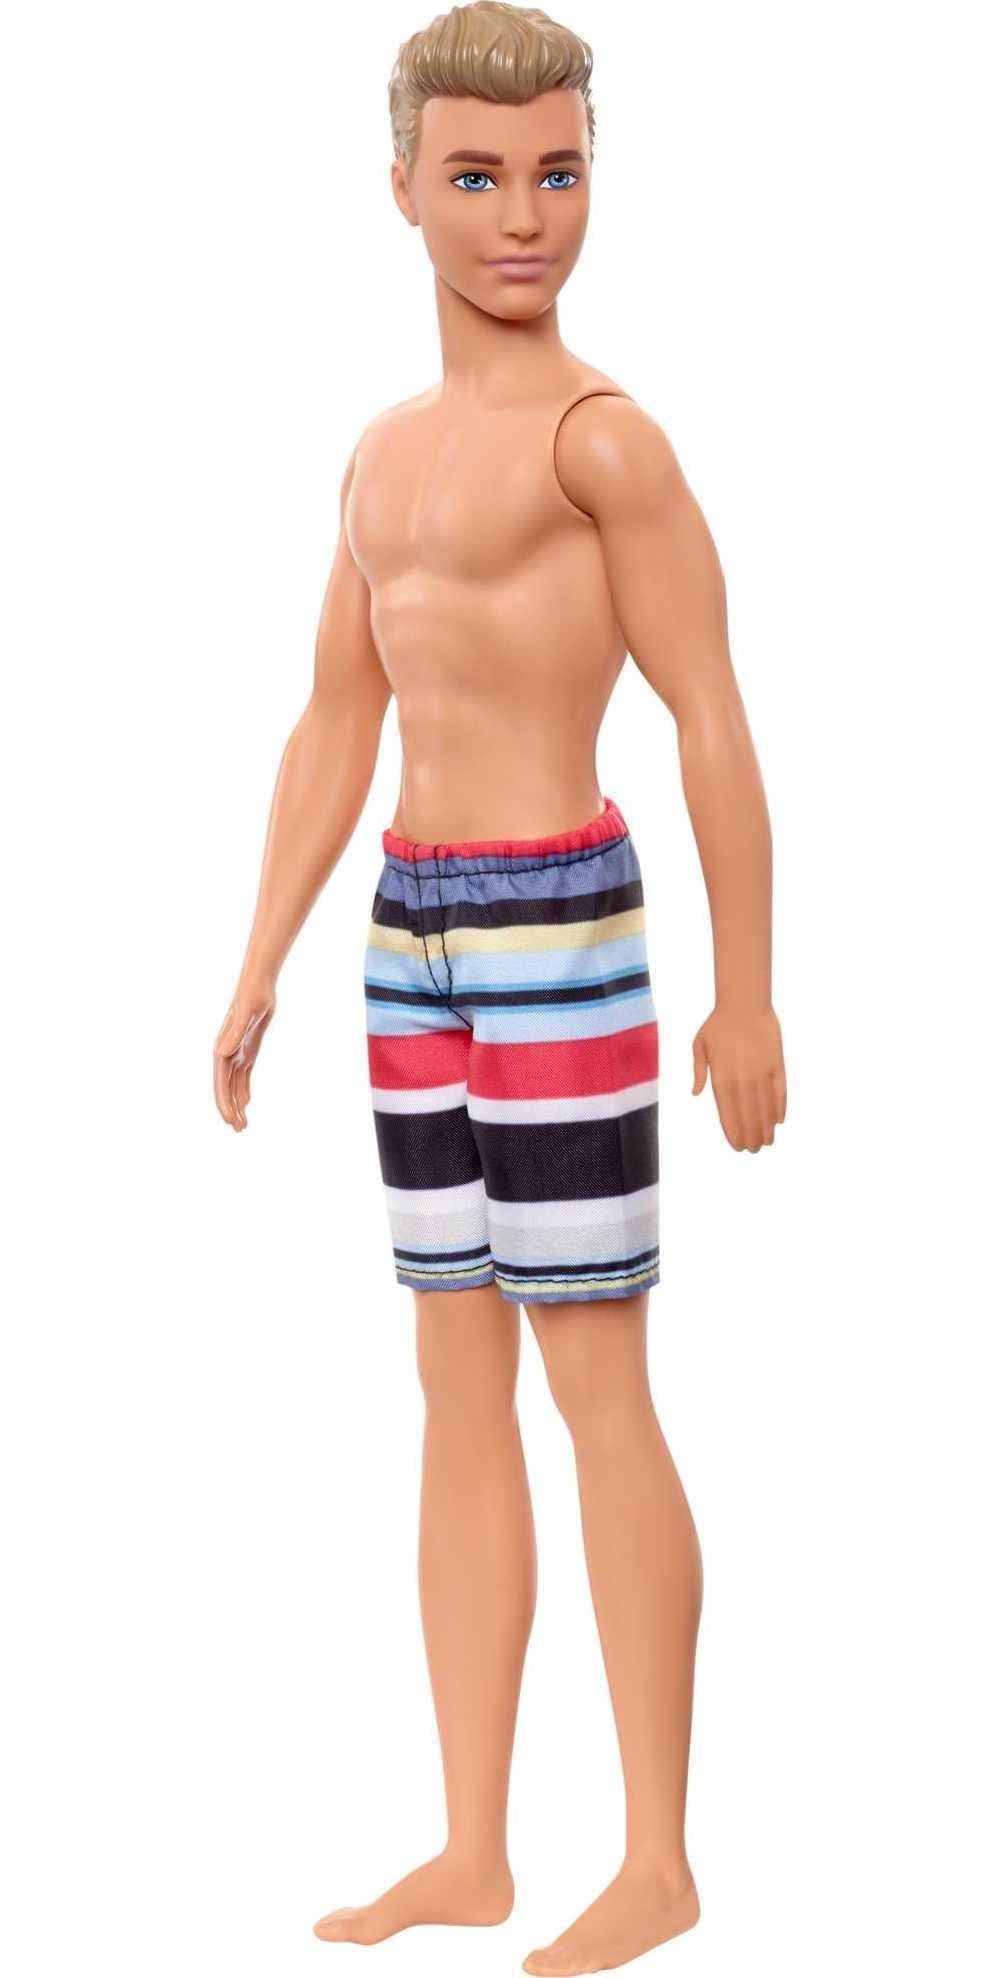 Barbie Ken Fashion Doll, Beach-Themed Wearing Striped Swimsuit